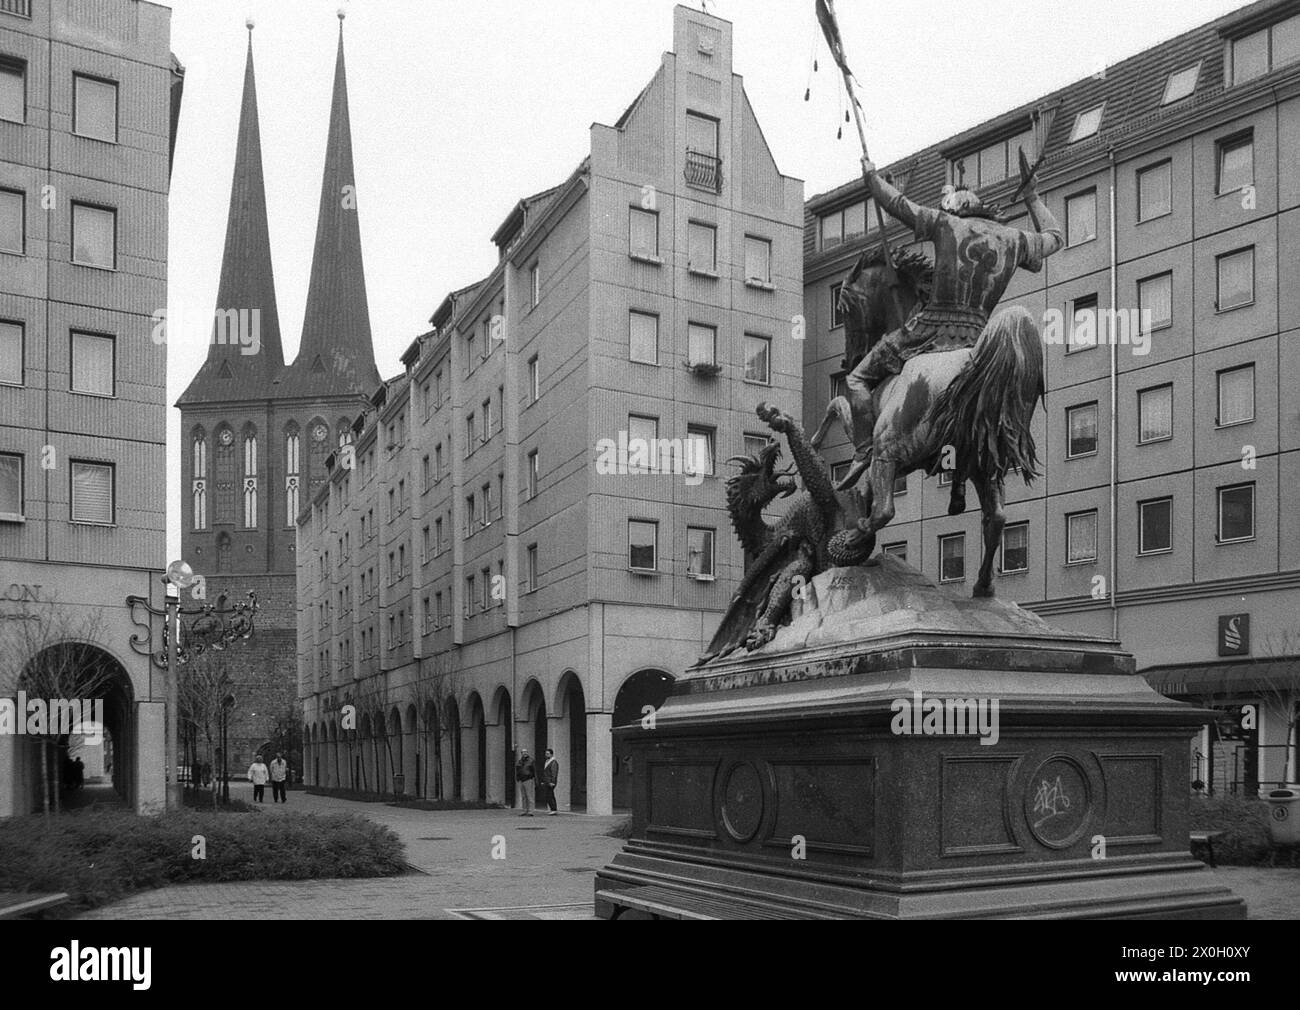 Sculpture en bronze de Saint George combattant le Dragon dans le quartier Nikolai à Berlin. A gauche, il y a les tours jumelles du nécessaire Nicholas' Church. Banque D'Images